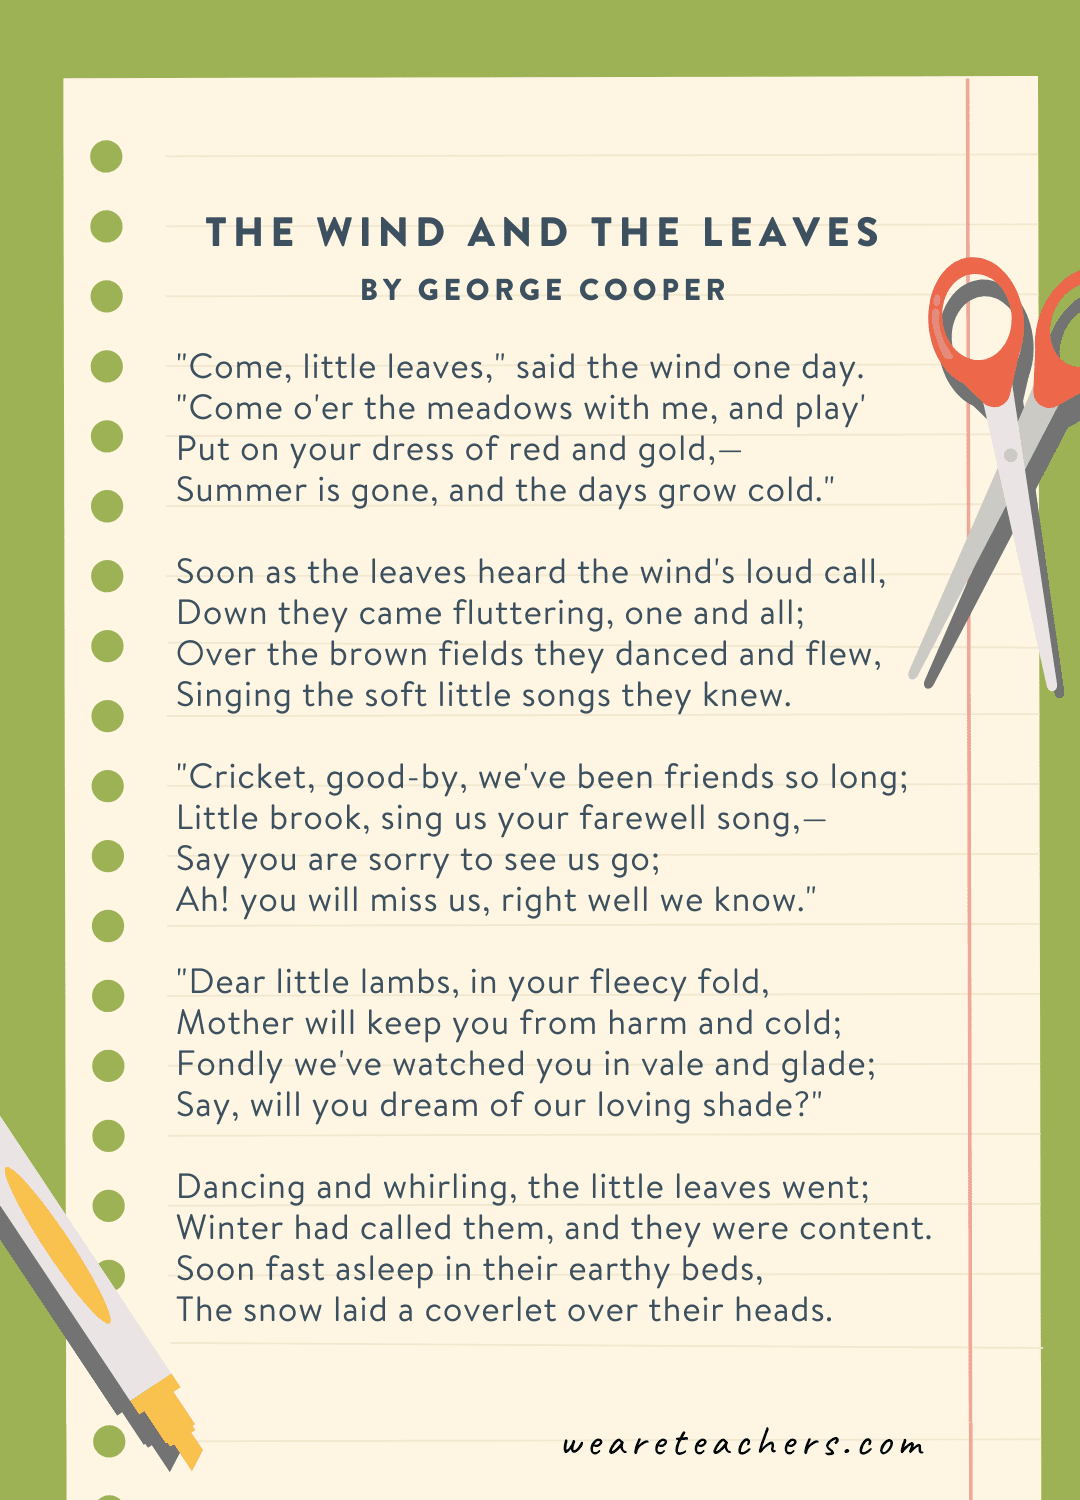 तीसरी कक्षा की कविताओं का उदाहरण: जॉर्ज कूपर द्वारा लिखित द विंड एंड द लीव्स